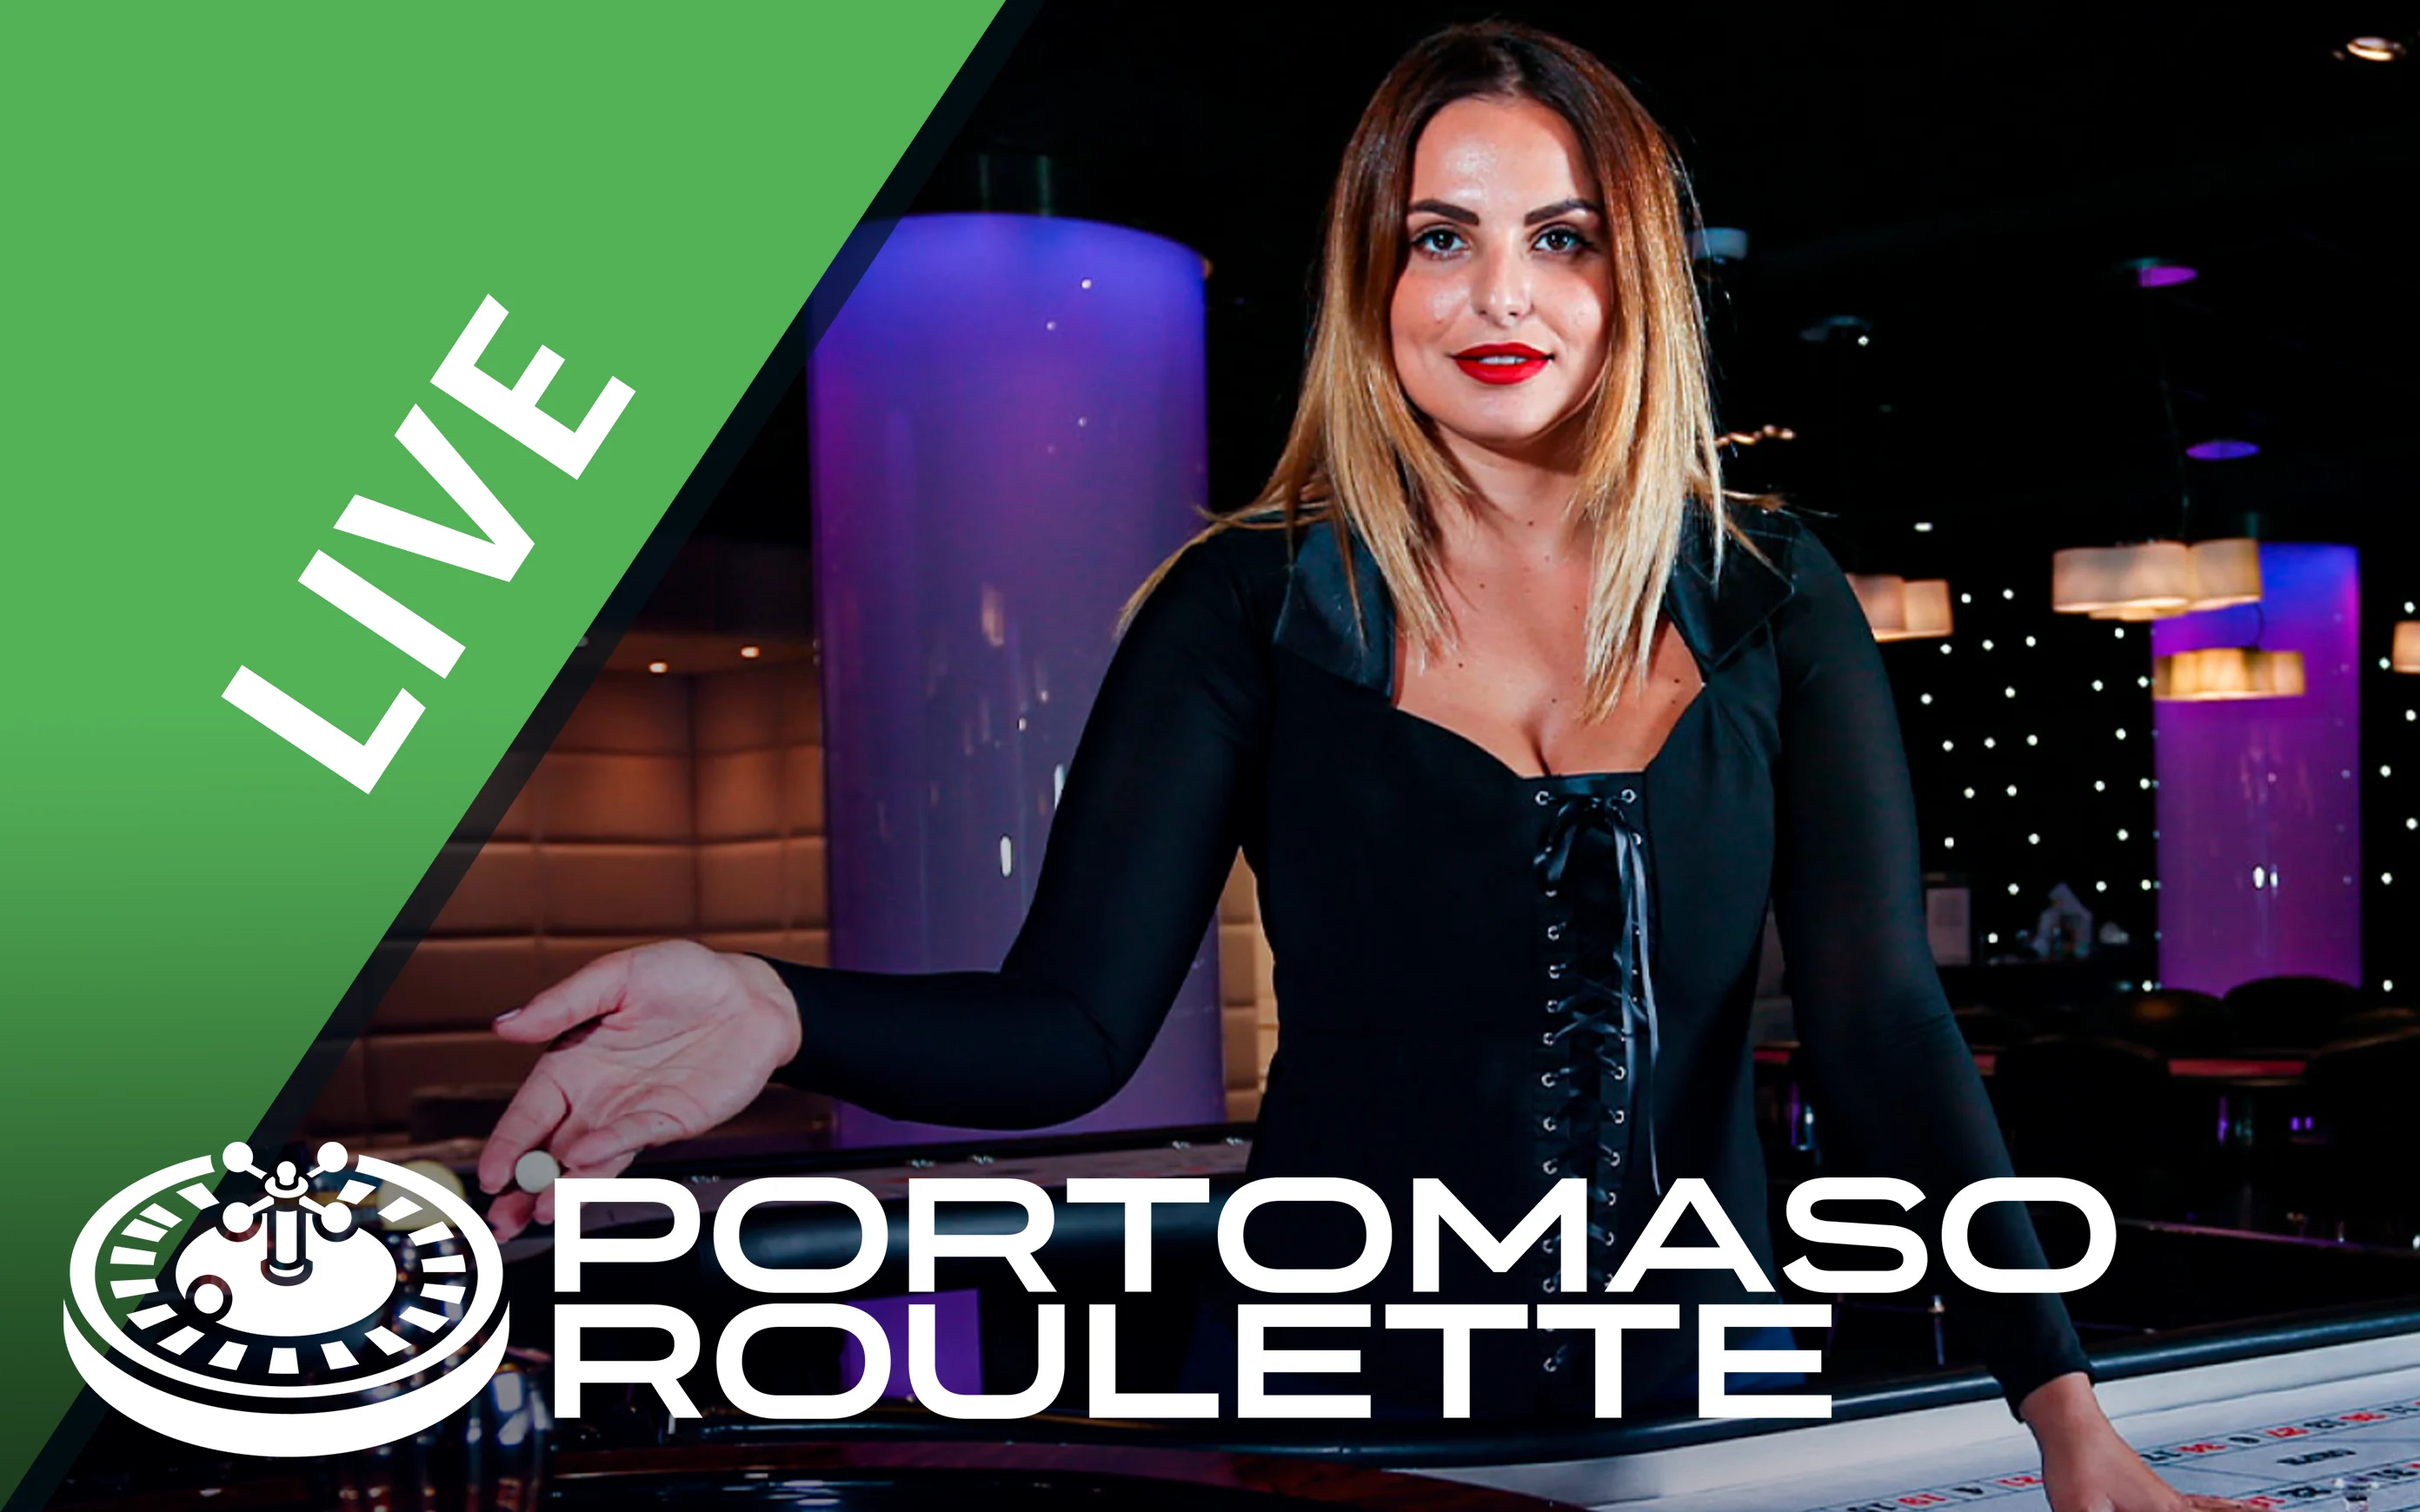 Juega a Portomaso Roulette en el casino en línea de Starcasino.be